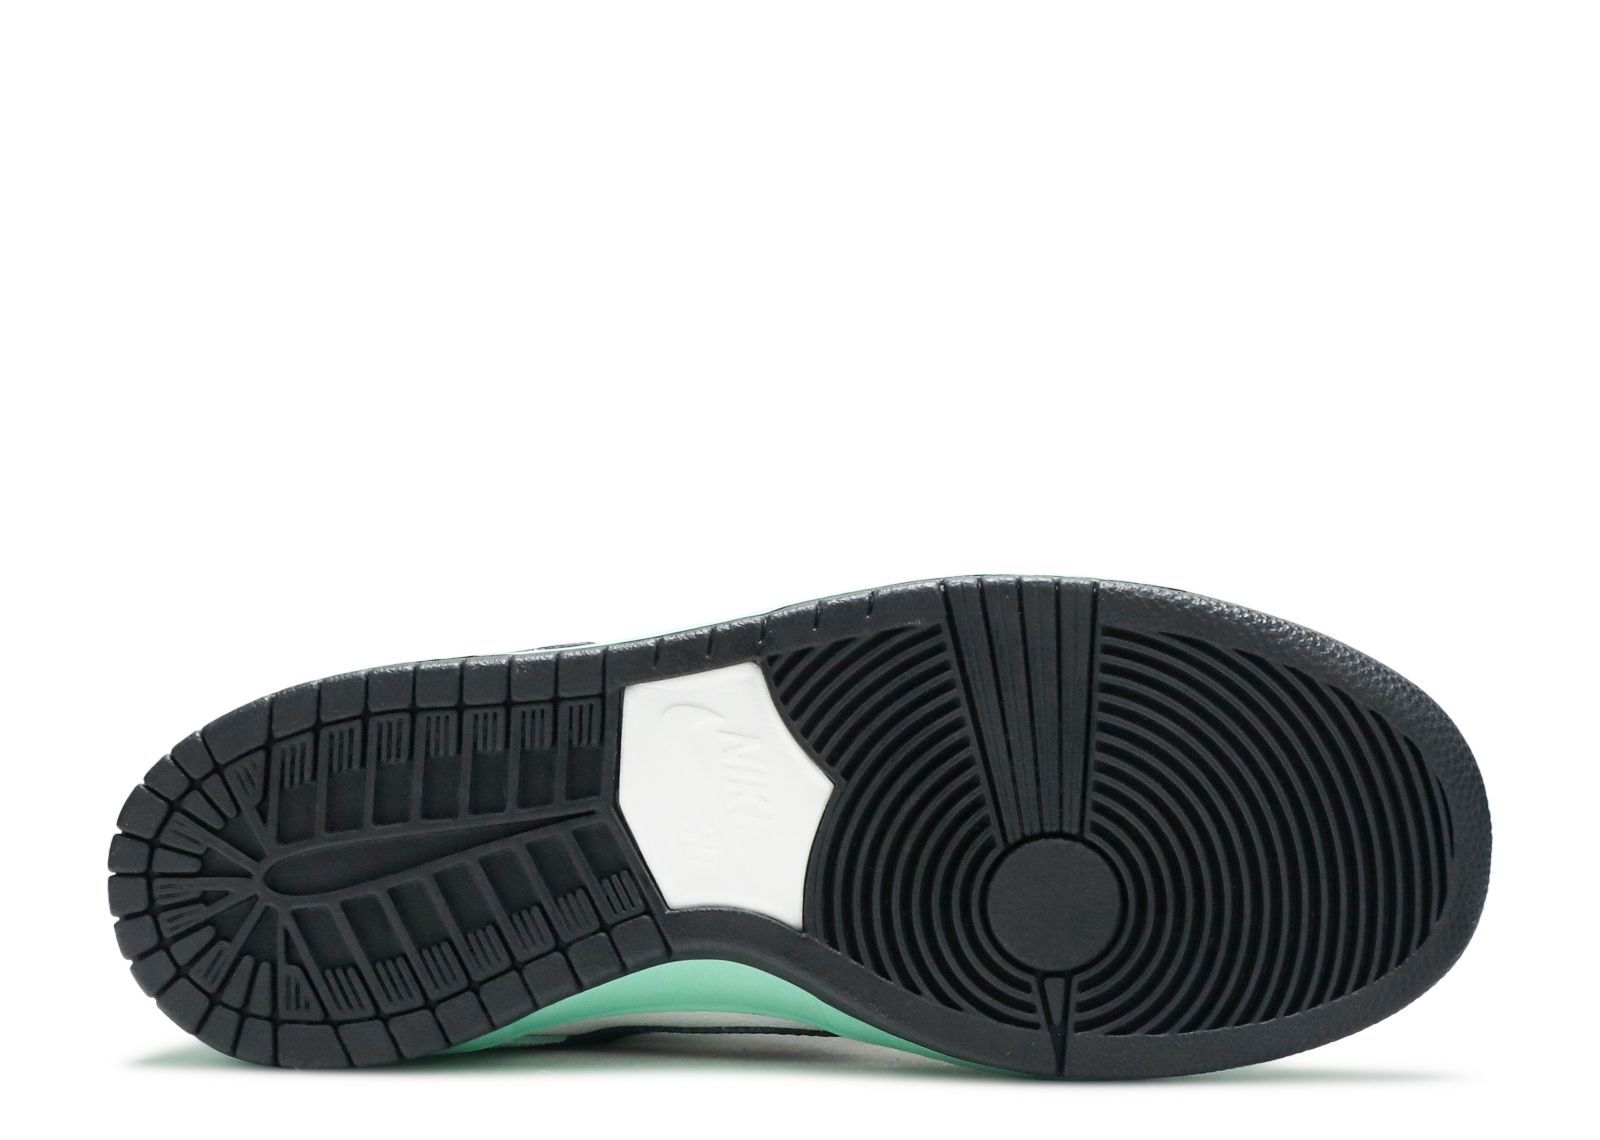 SB Dunk Low 'Sea Crystal' - Nike - 819674 301 - ice green/black 